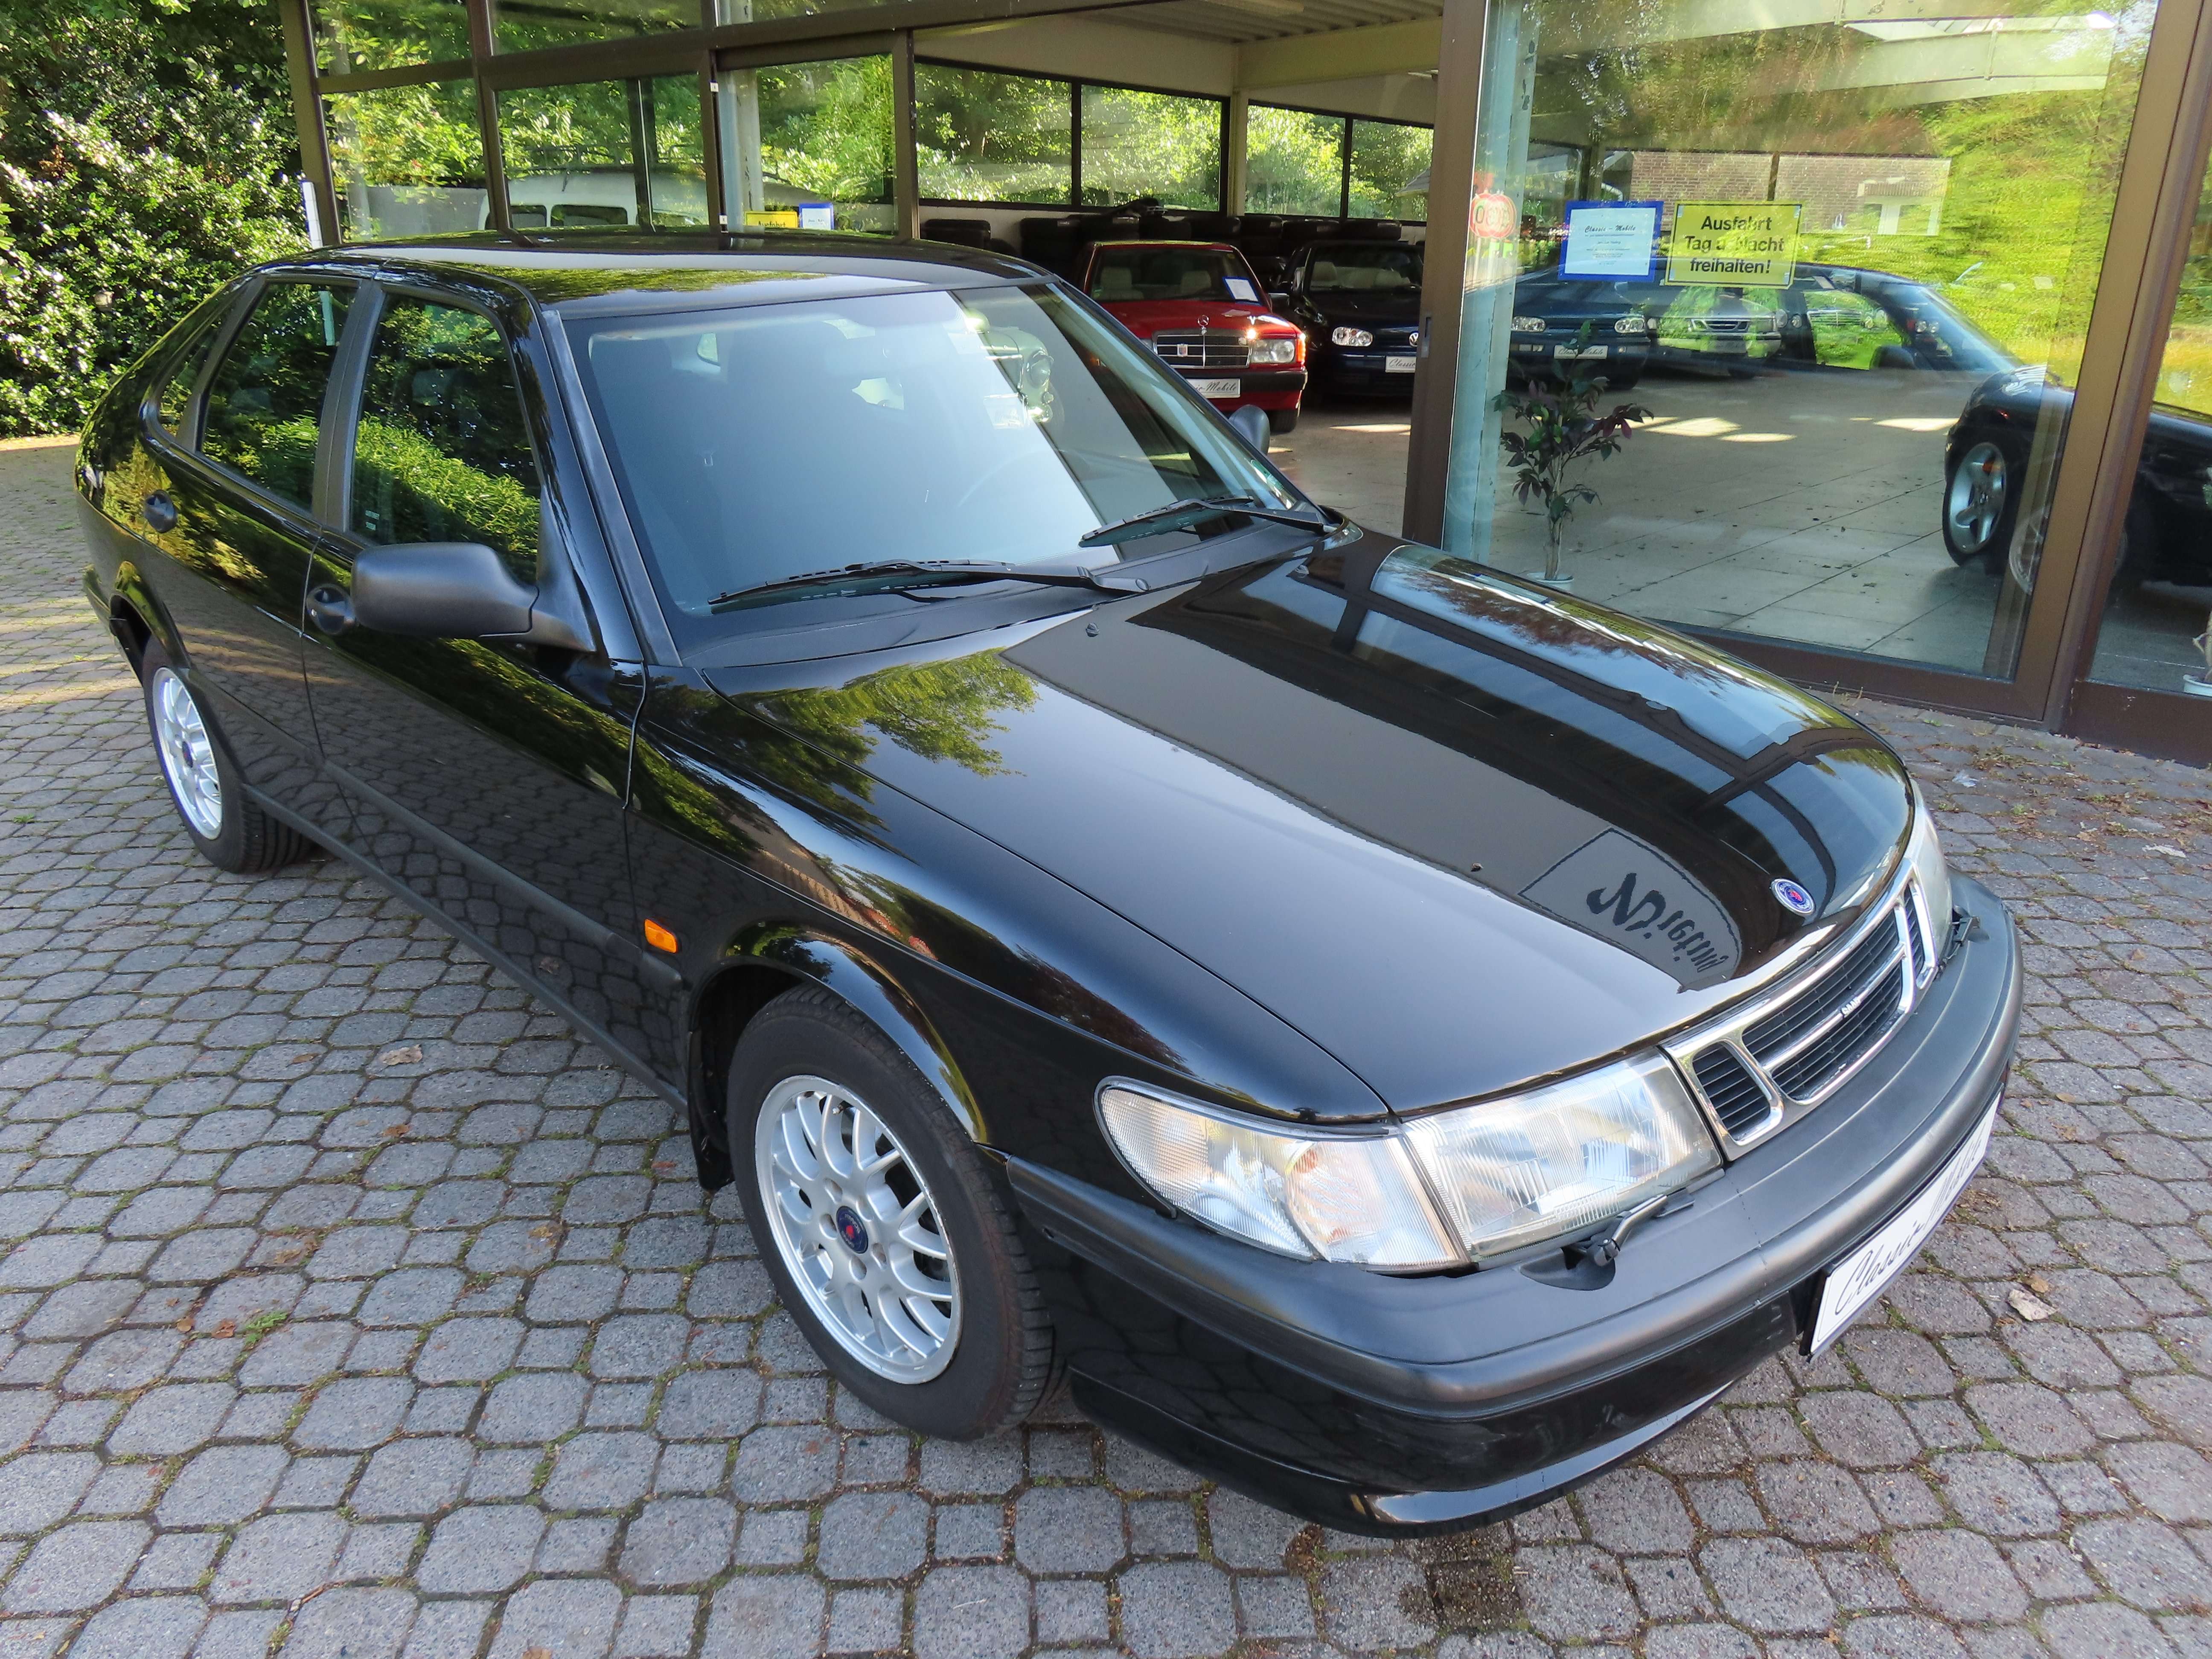 Saab 900 Sedan in Black used in Beverstedt for € 2,750.-